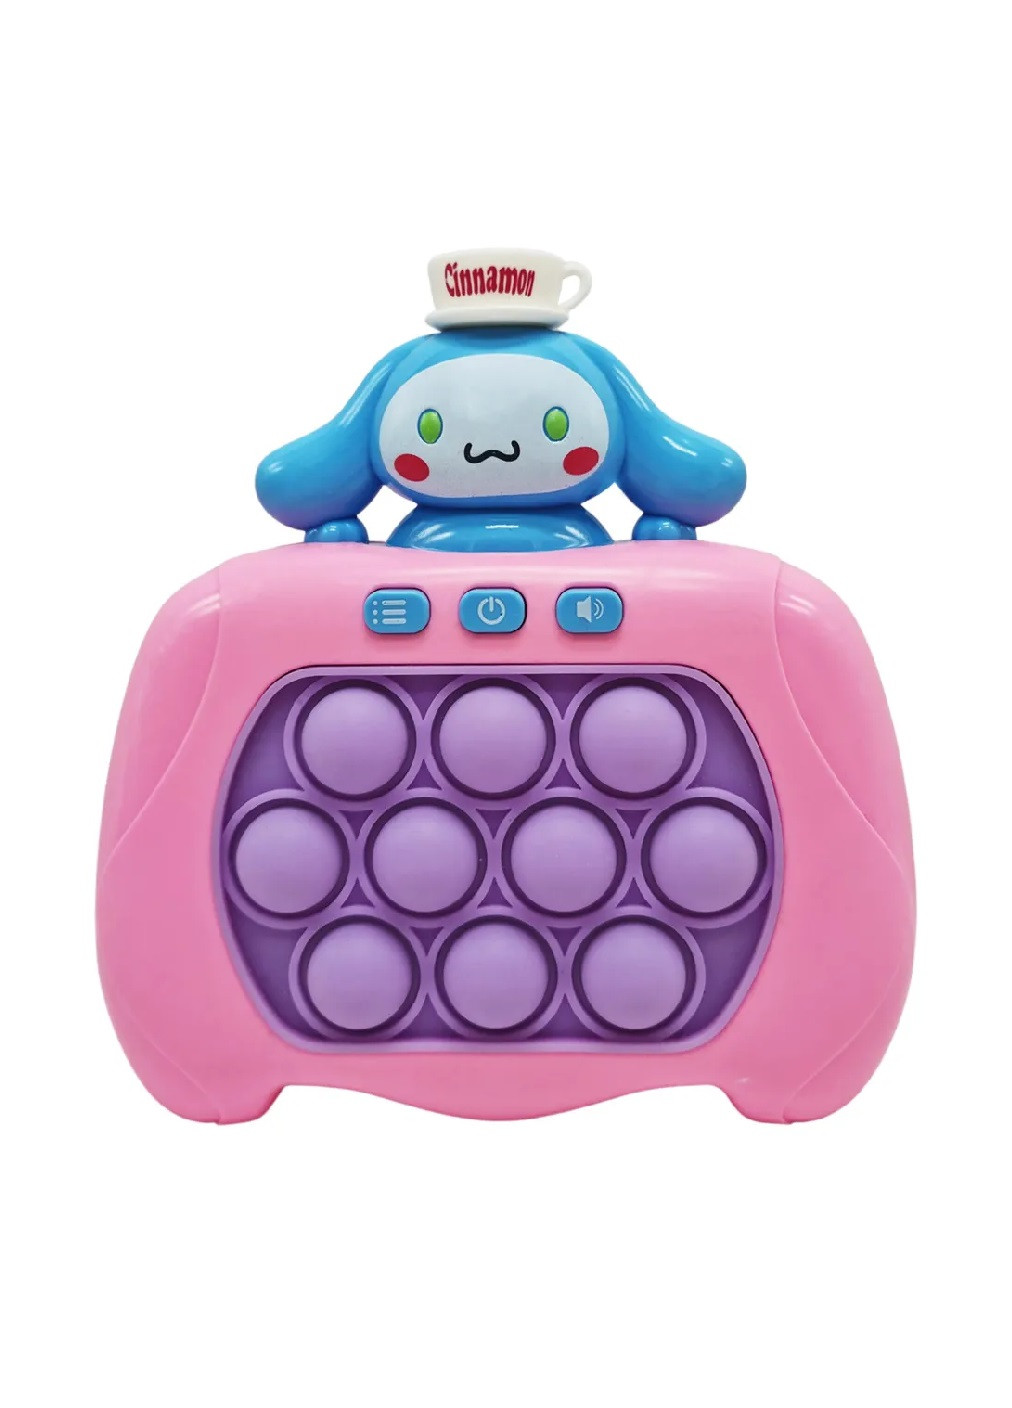 Электронная игрушка антистресс головоломка для детей малышей с пузырьками на батарейках (476246-Prob) Синнаморолл розовый Unbranded (277973845)